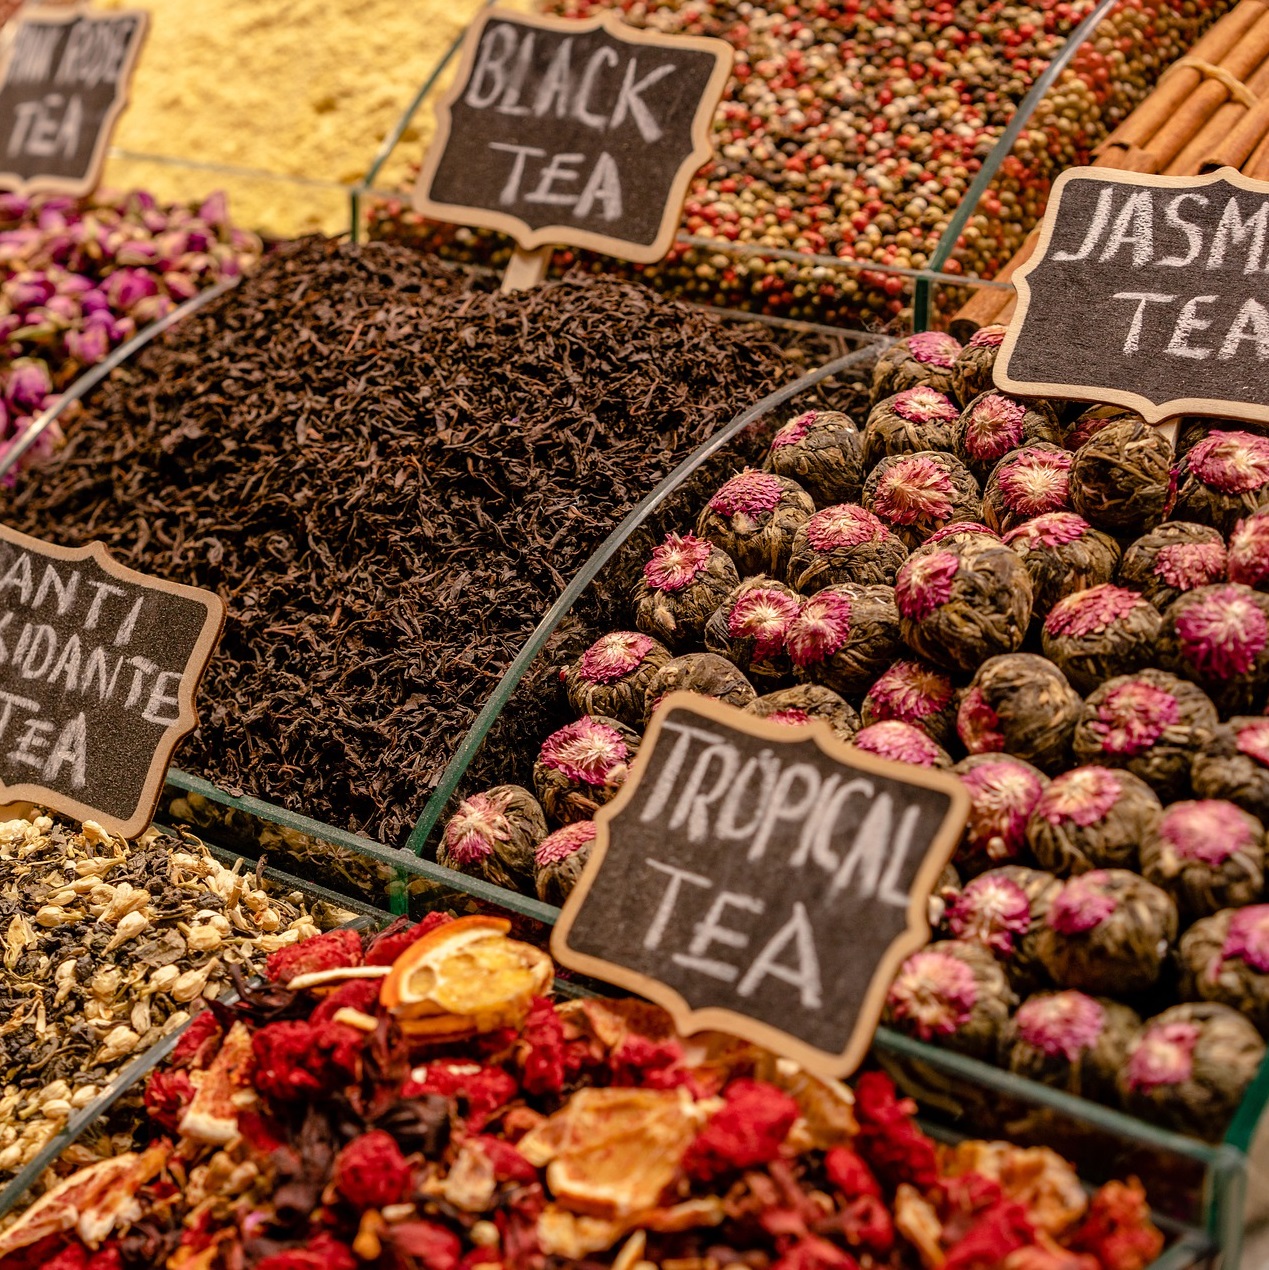 Thé et tisanes sur les marché